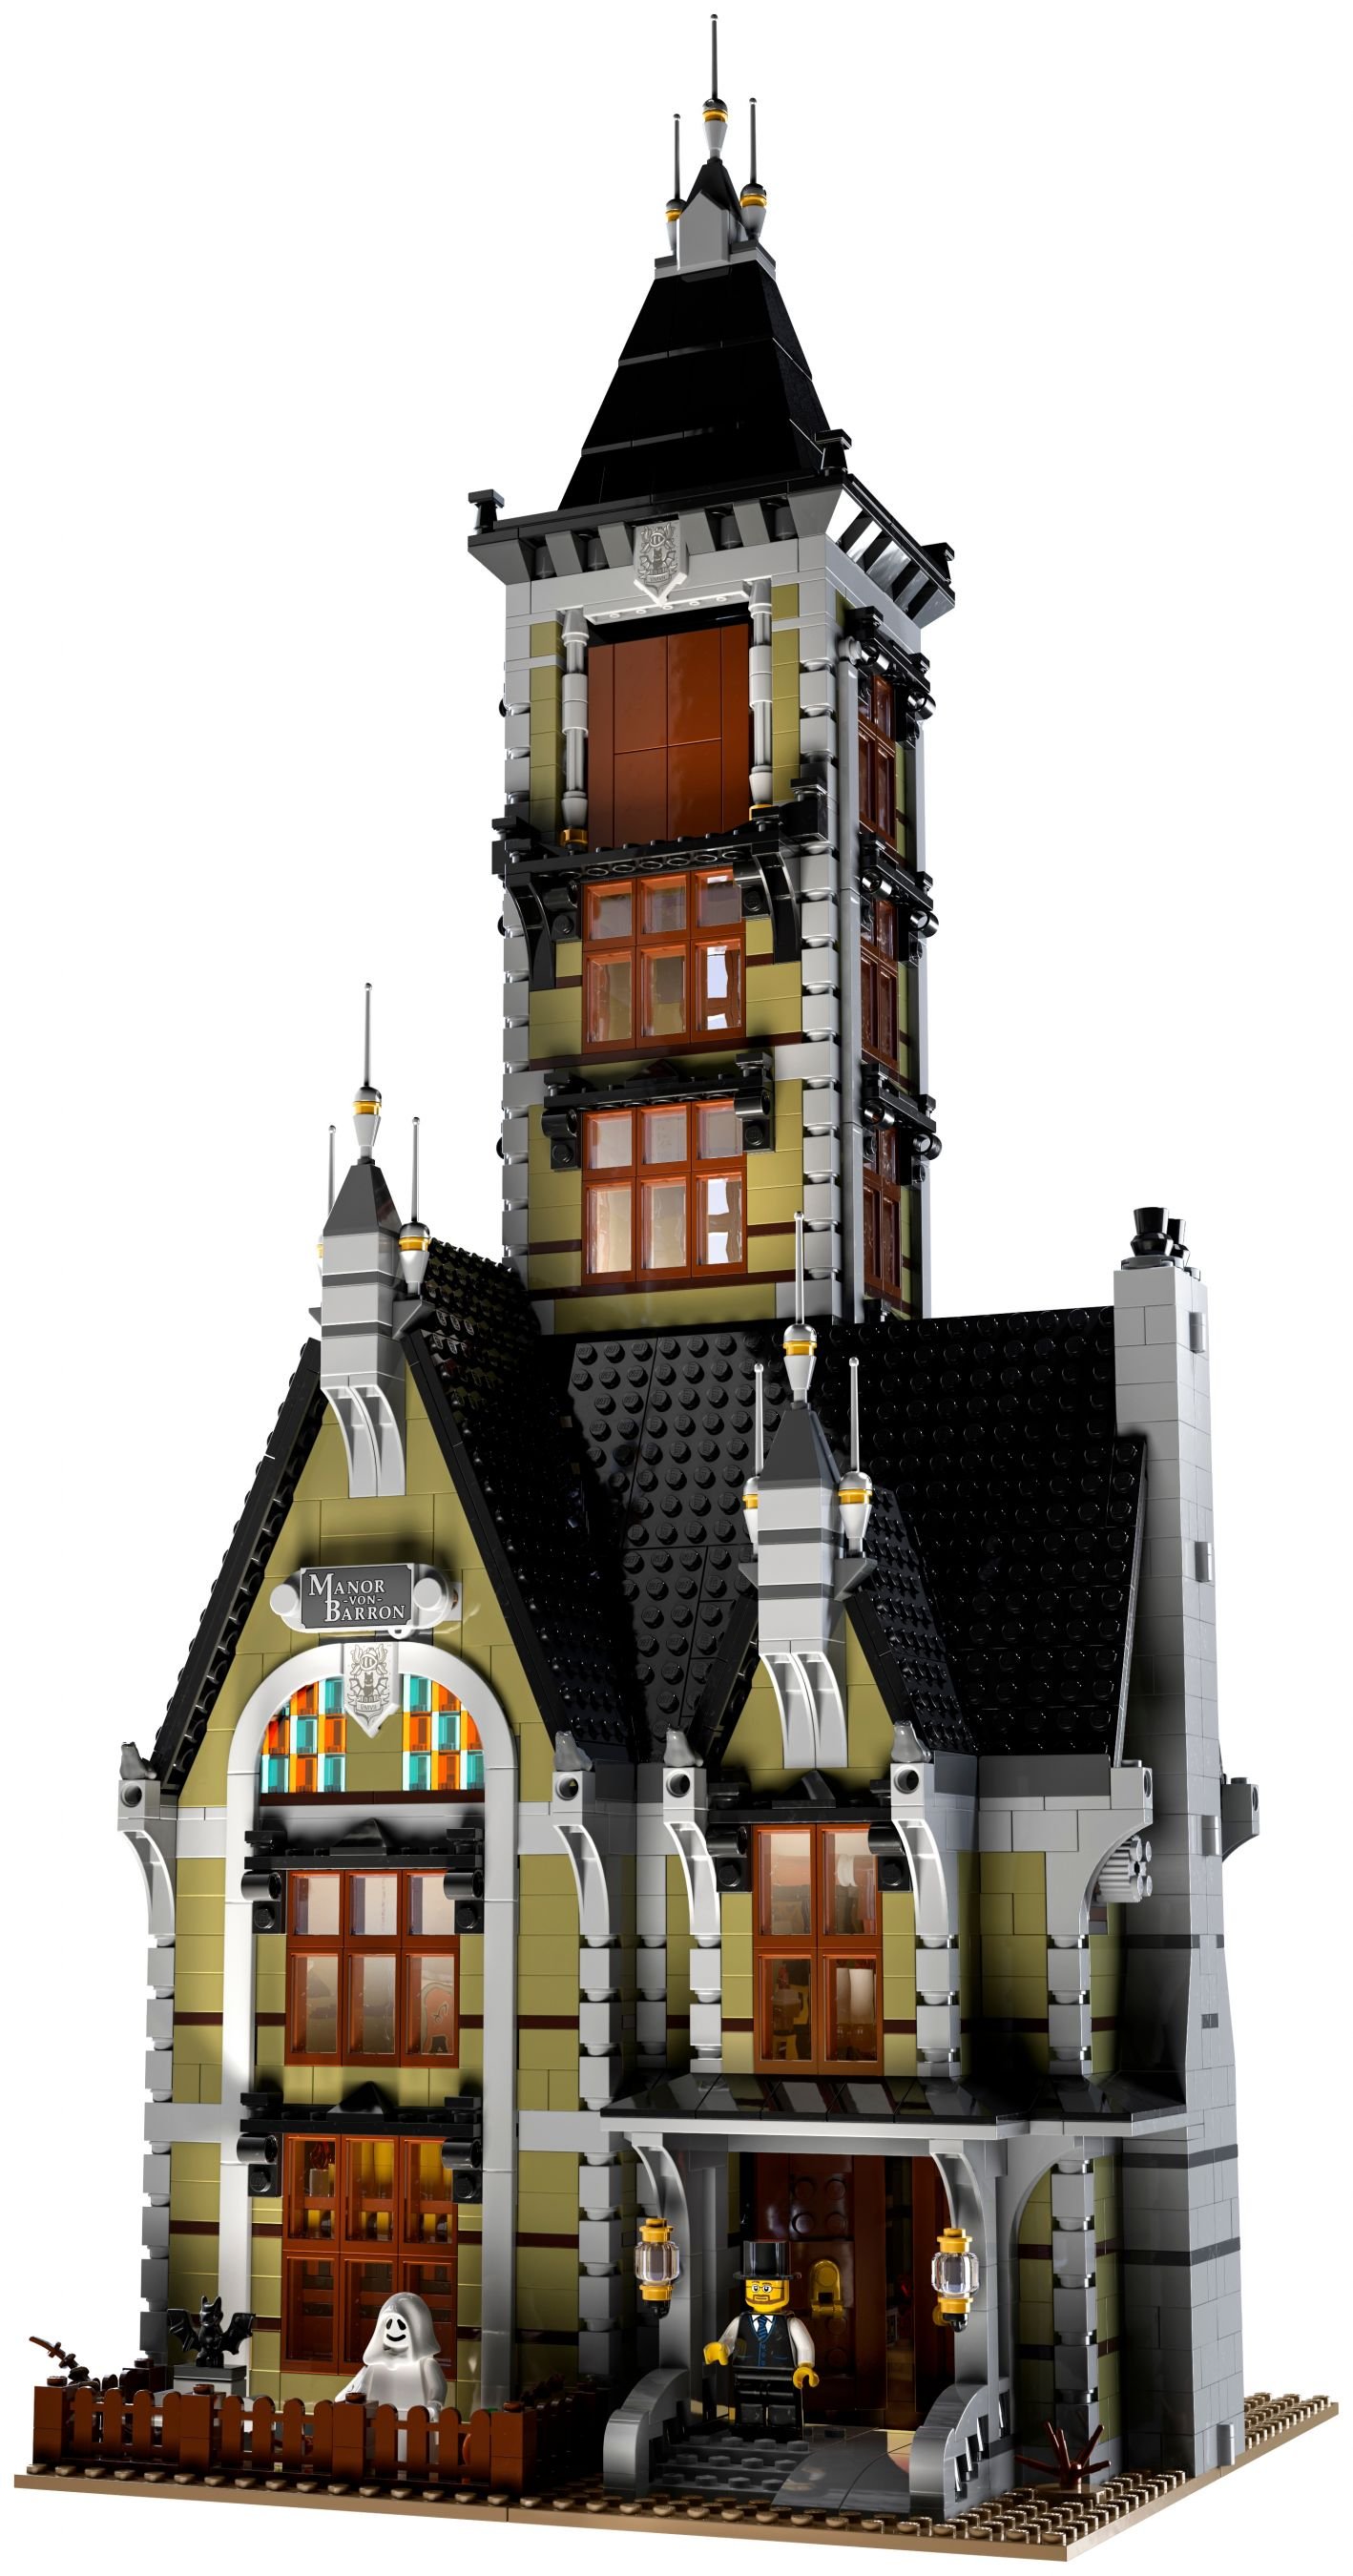 LEGO Advanced Models 10273 Geisterhaus auf dem Jahrmarkt LEGO_10273_alt3.jpg